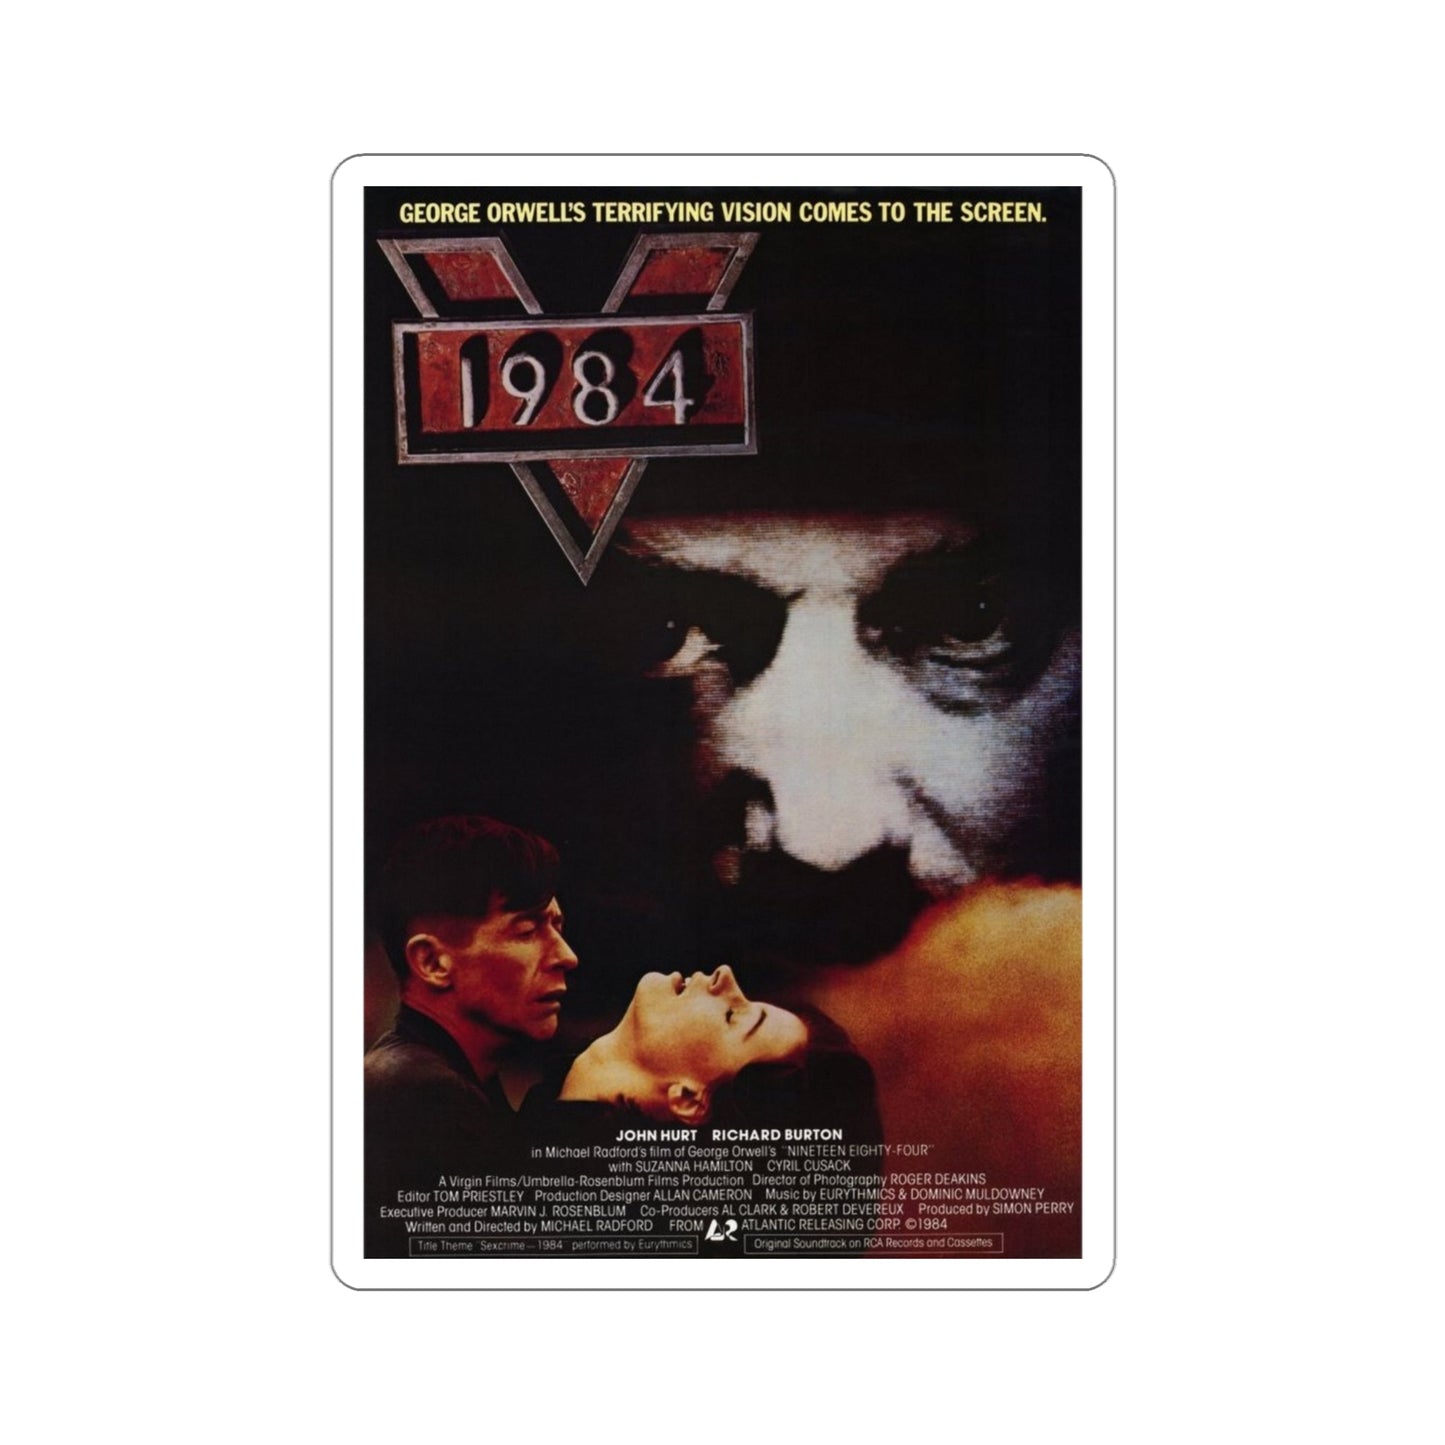 1984 1984 Movie Poster STICKER Vinyl Die-Cut Decal-4 Inch-The Sticker Space